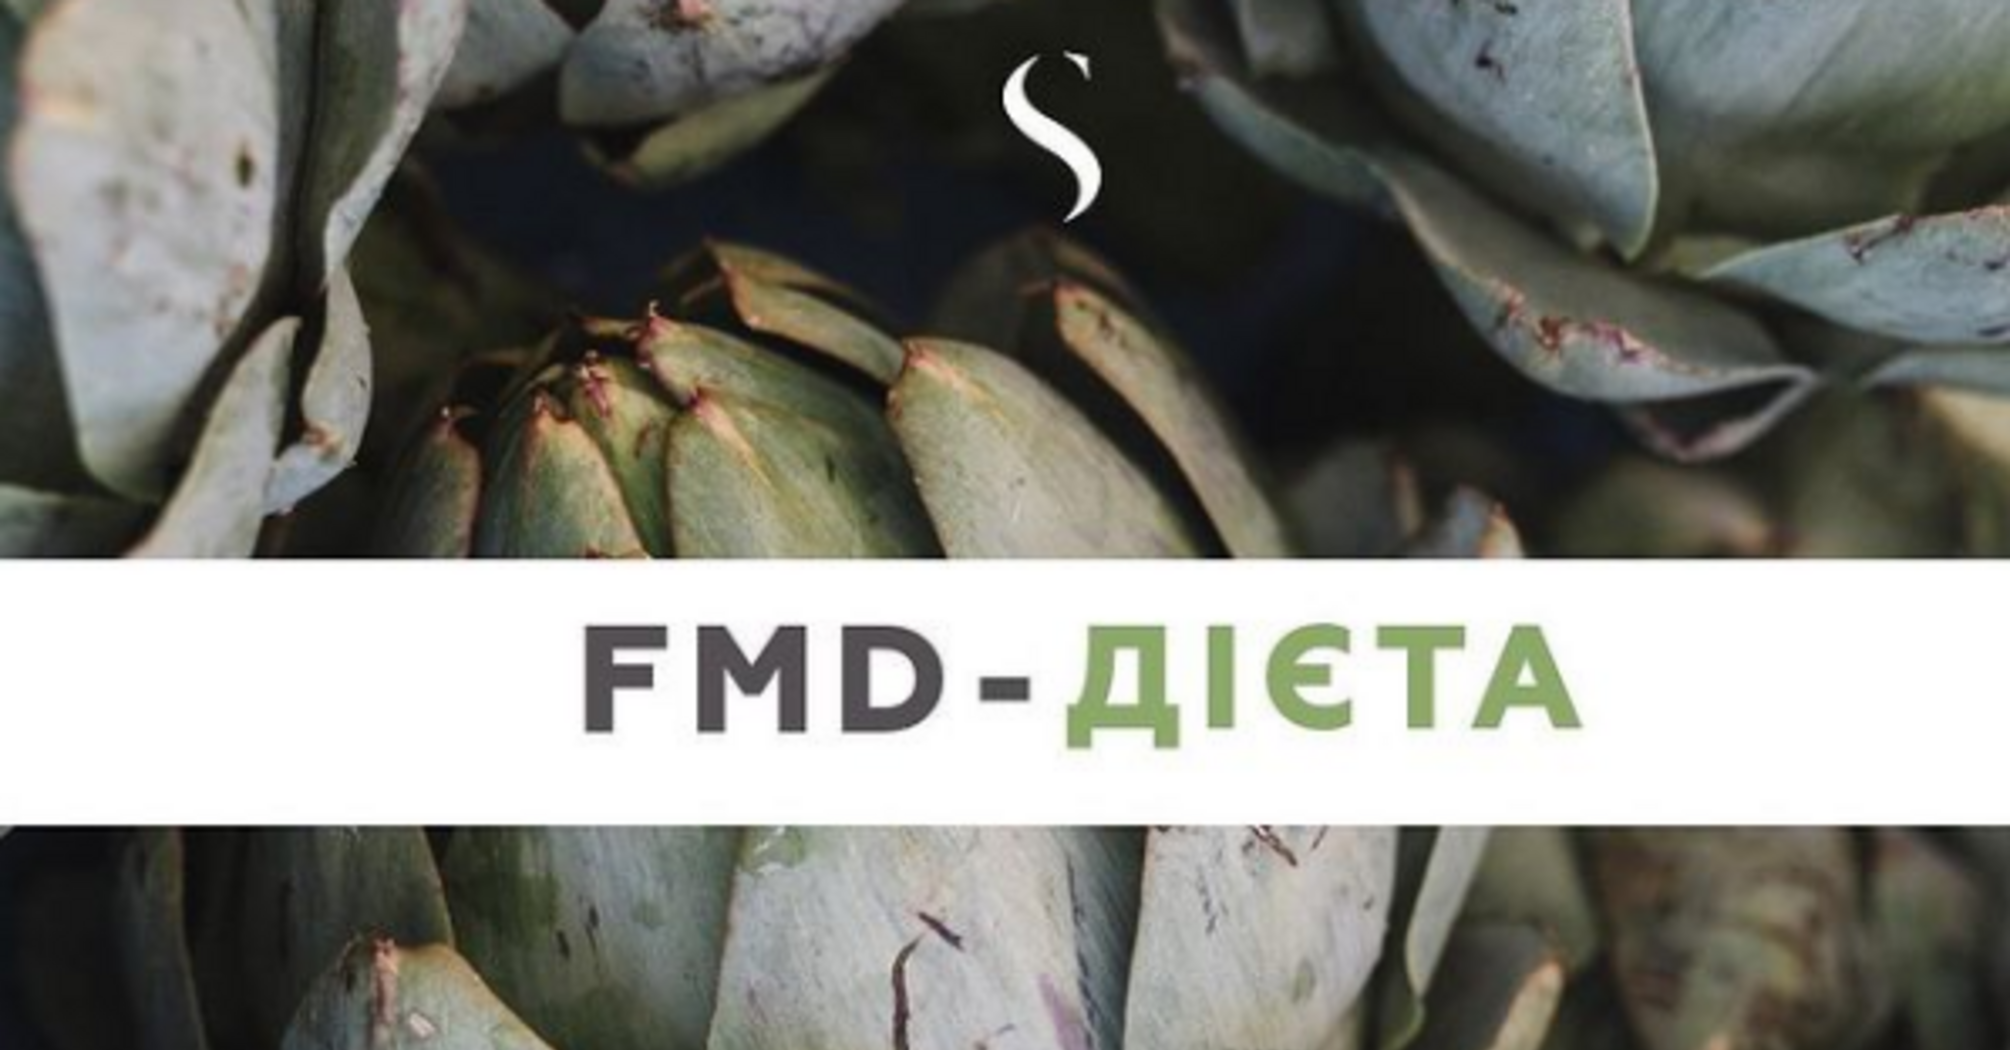 FMD-диета: для кого будет эффективной